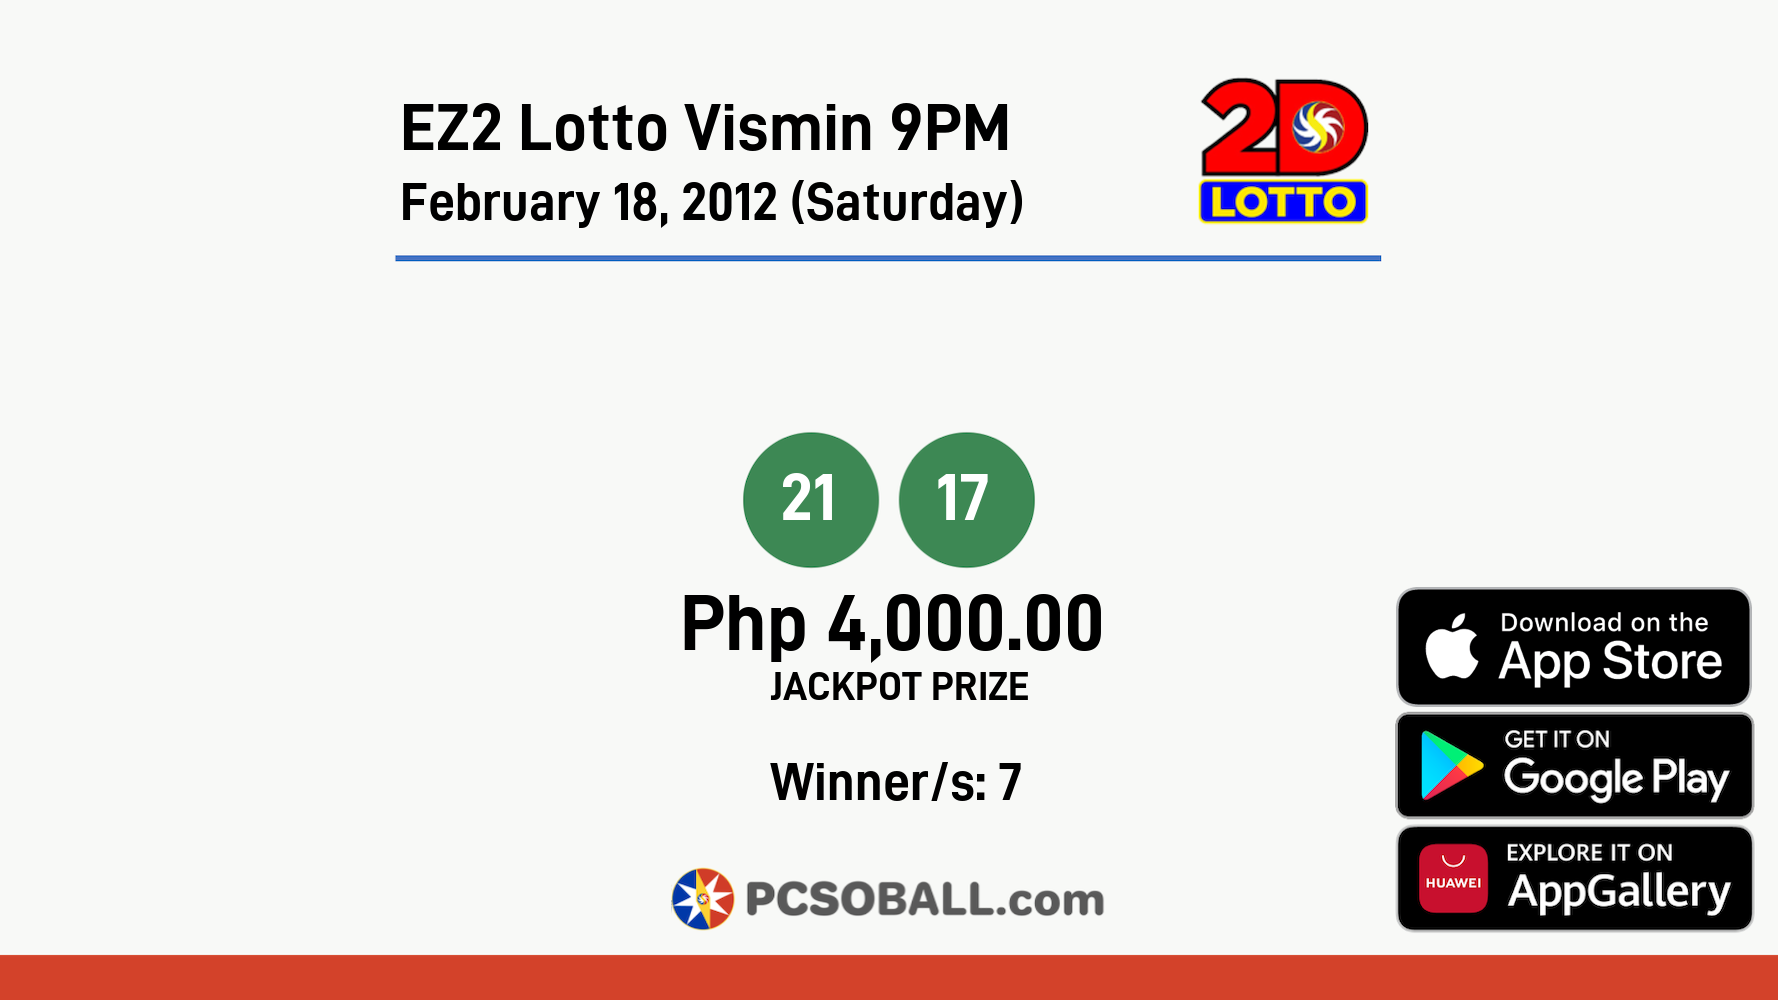 EZ2 Lotto Vismin 9PM February 18, 2012 (Saturday) Result